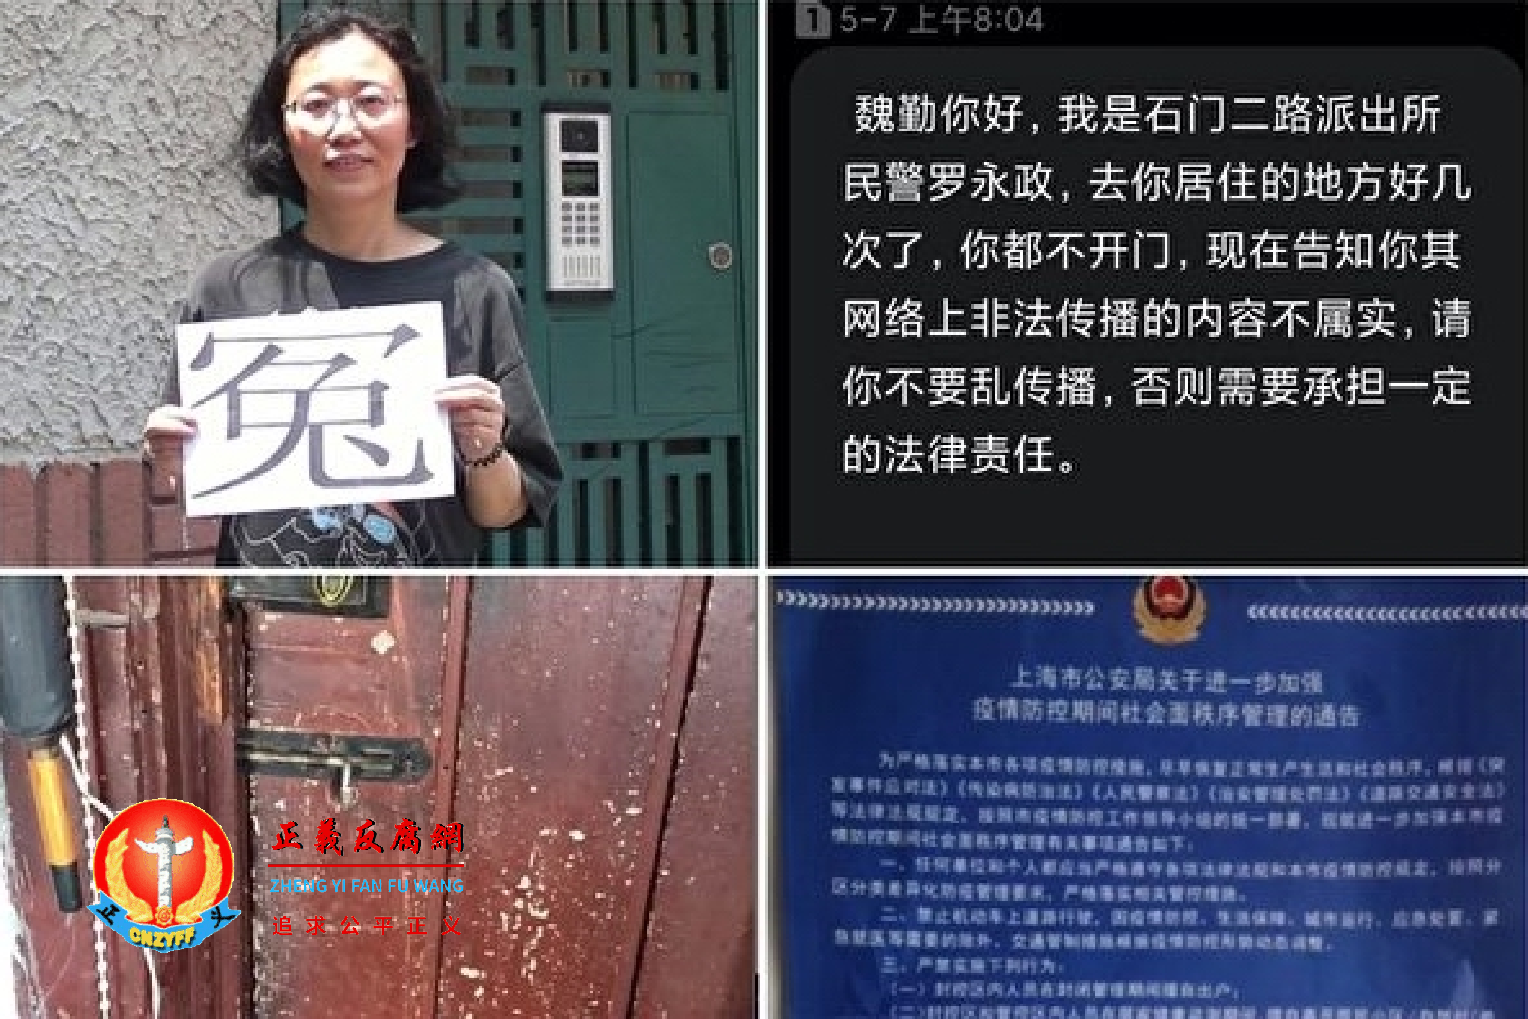 上海访民魏勤在朋友圈晒政府发放的物资及朋友圈疫情视频遭警方多次短信和上门口头警告。.png